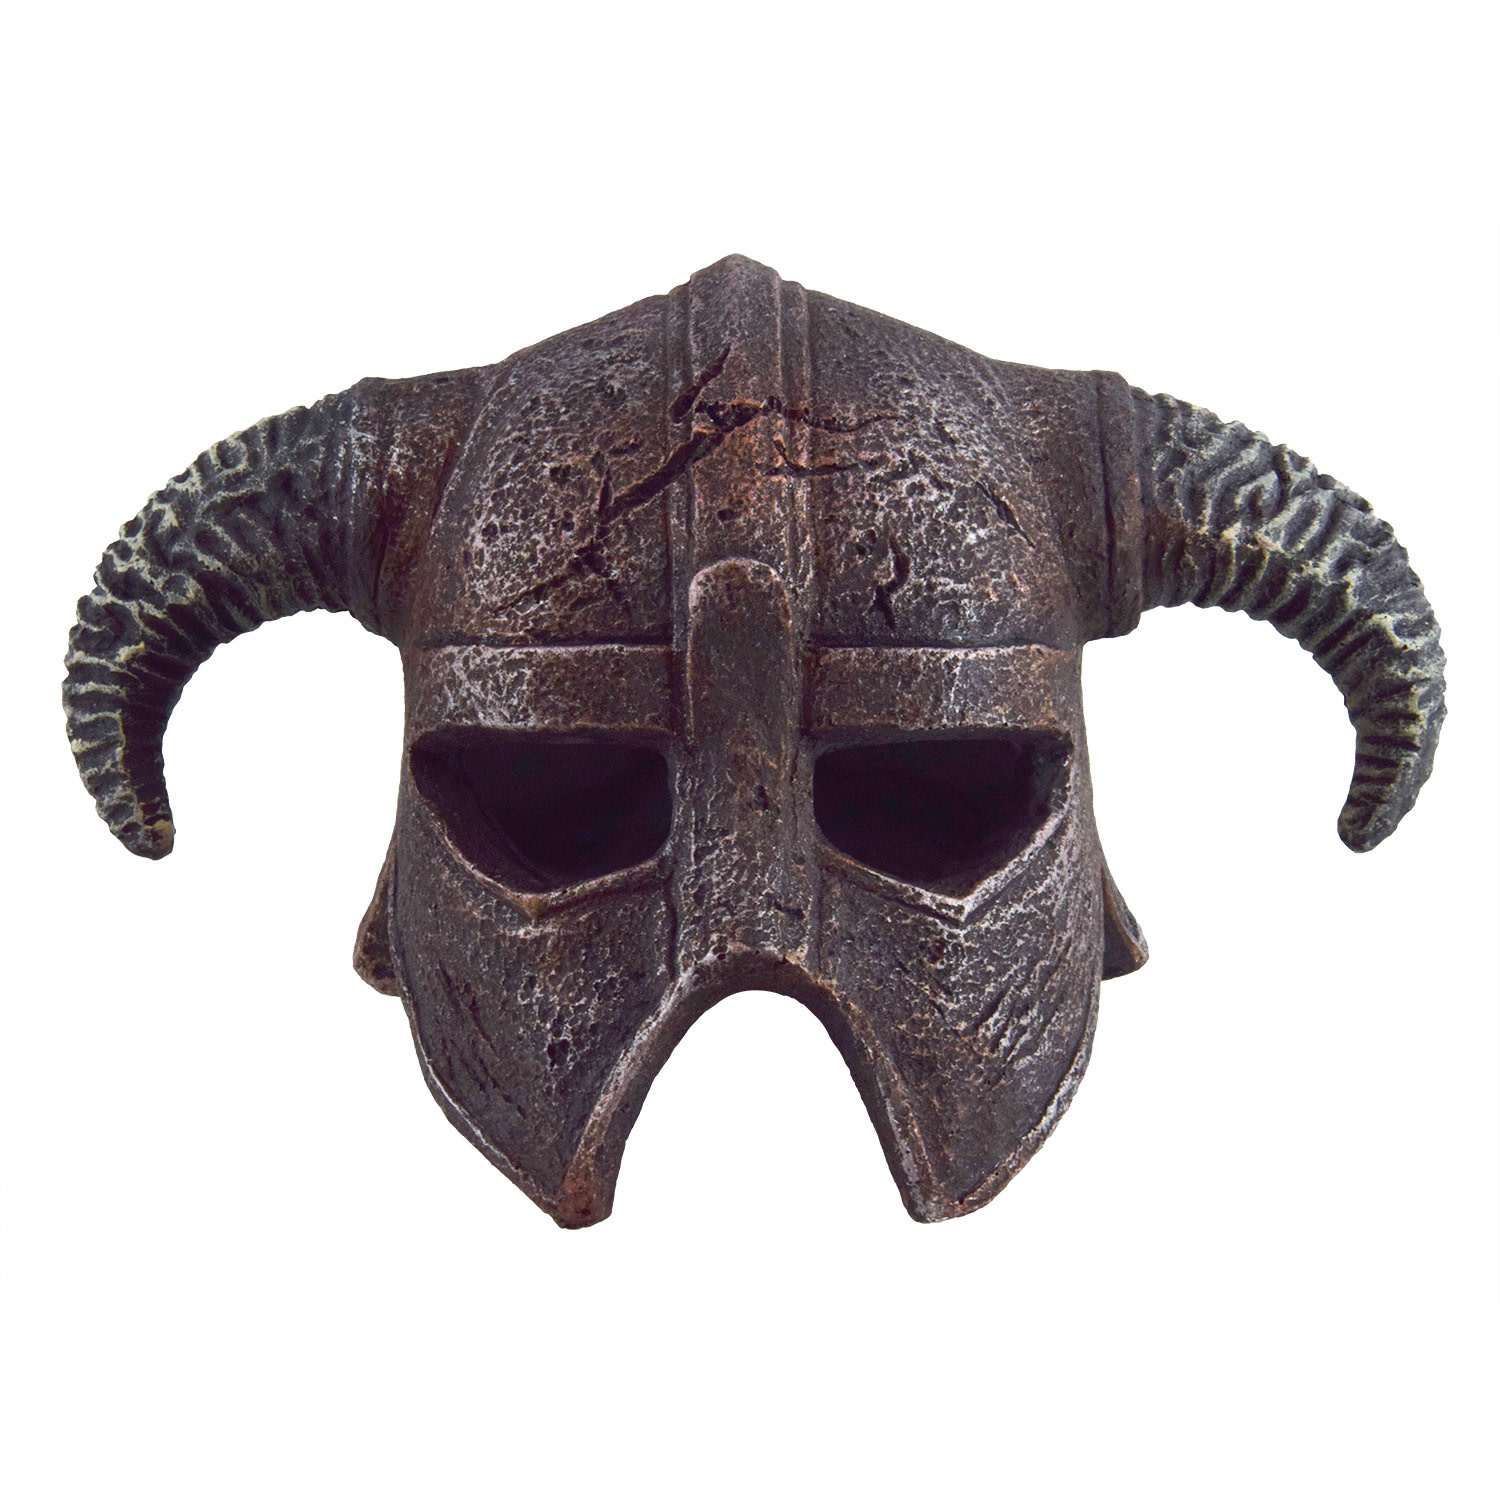 Treasures underwater Casque de guerrier - Warrior Helmet